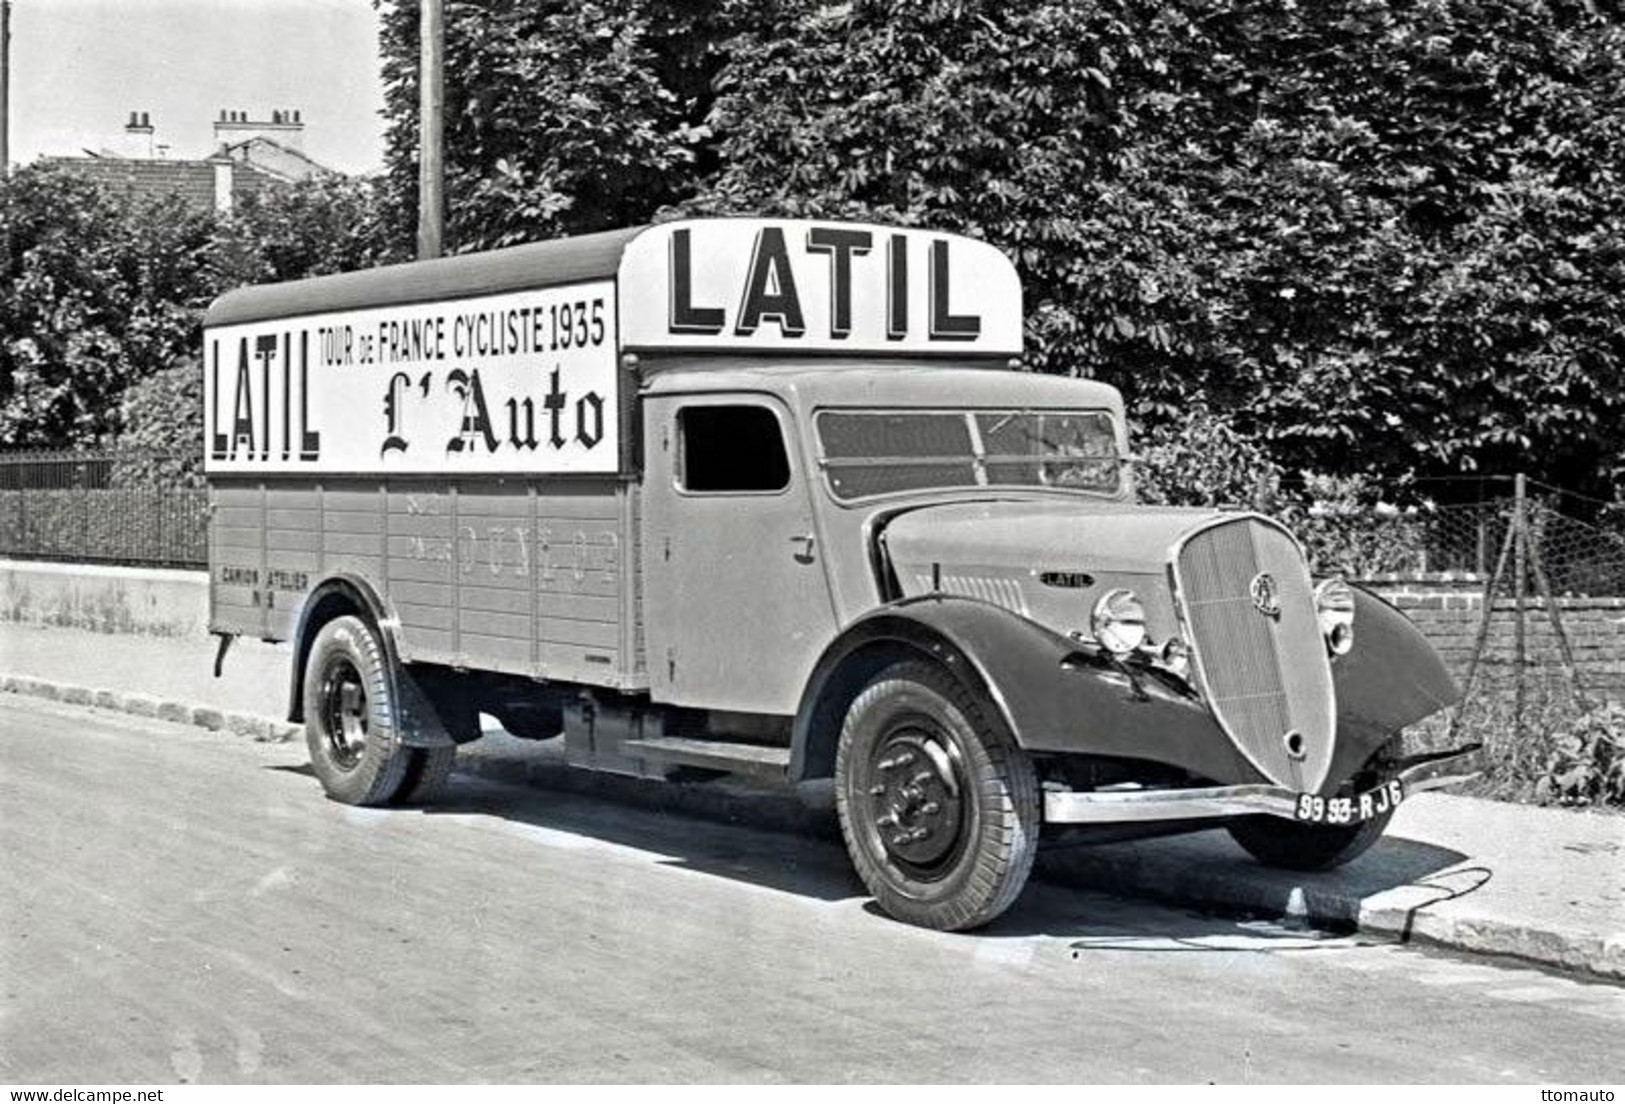 Latil Camion - Vehicule Publicitaire Pour Le Tour De France 1935  -  15x10cms PHOTO - Camions & Poids Lourds